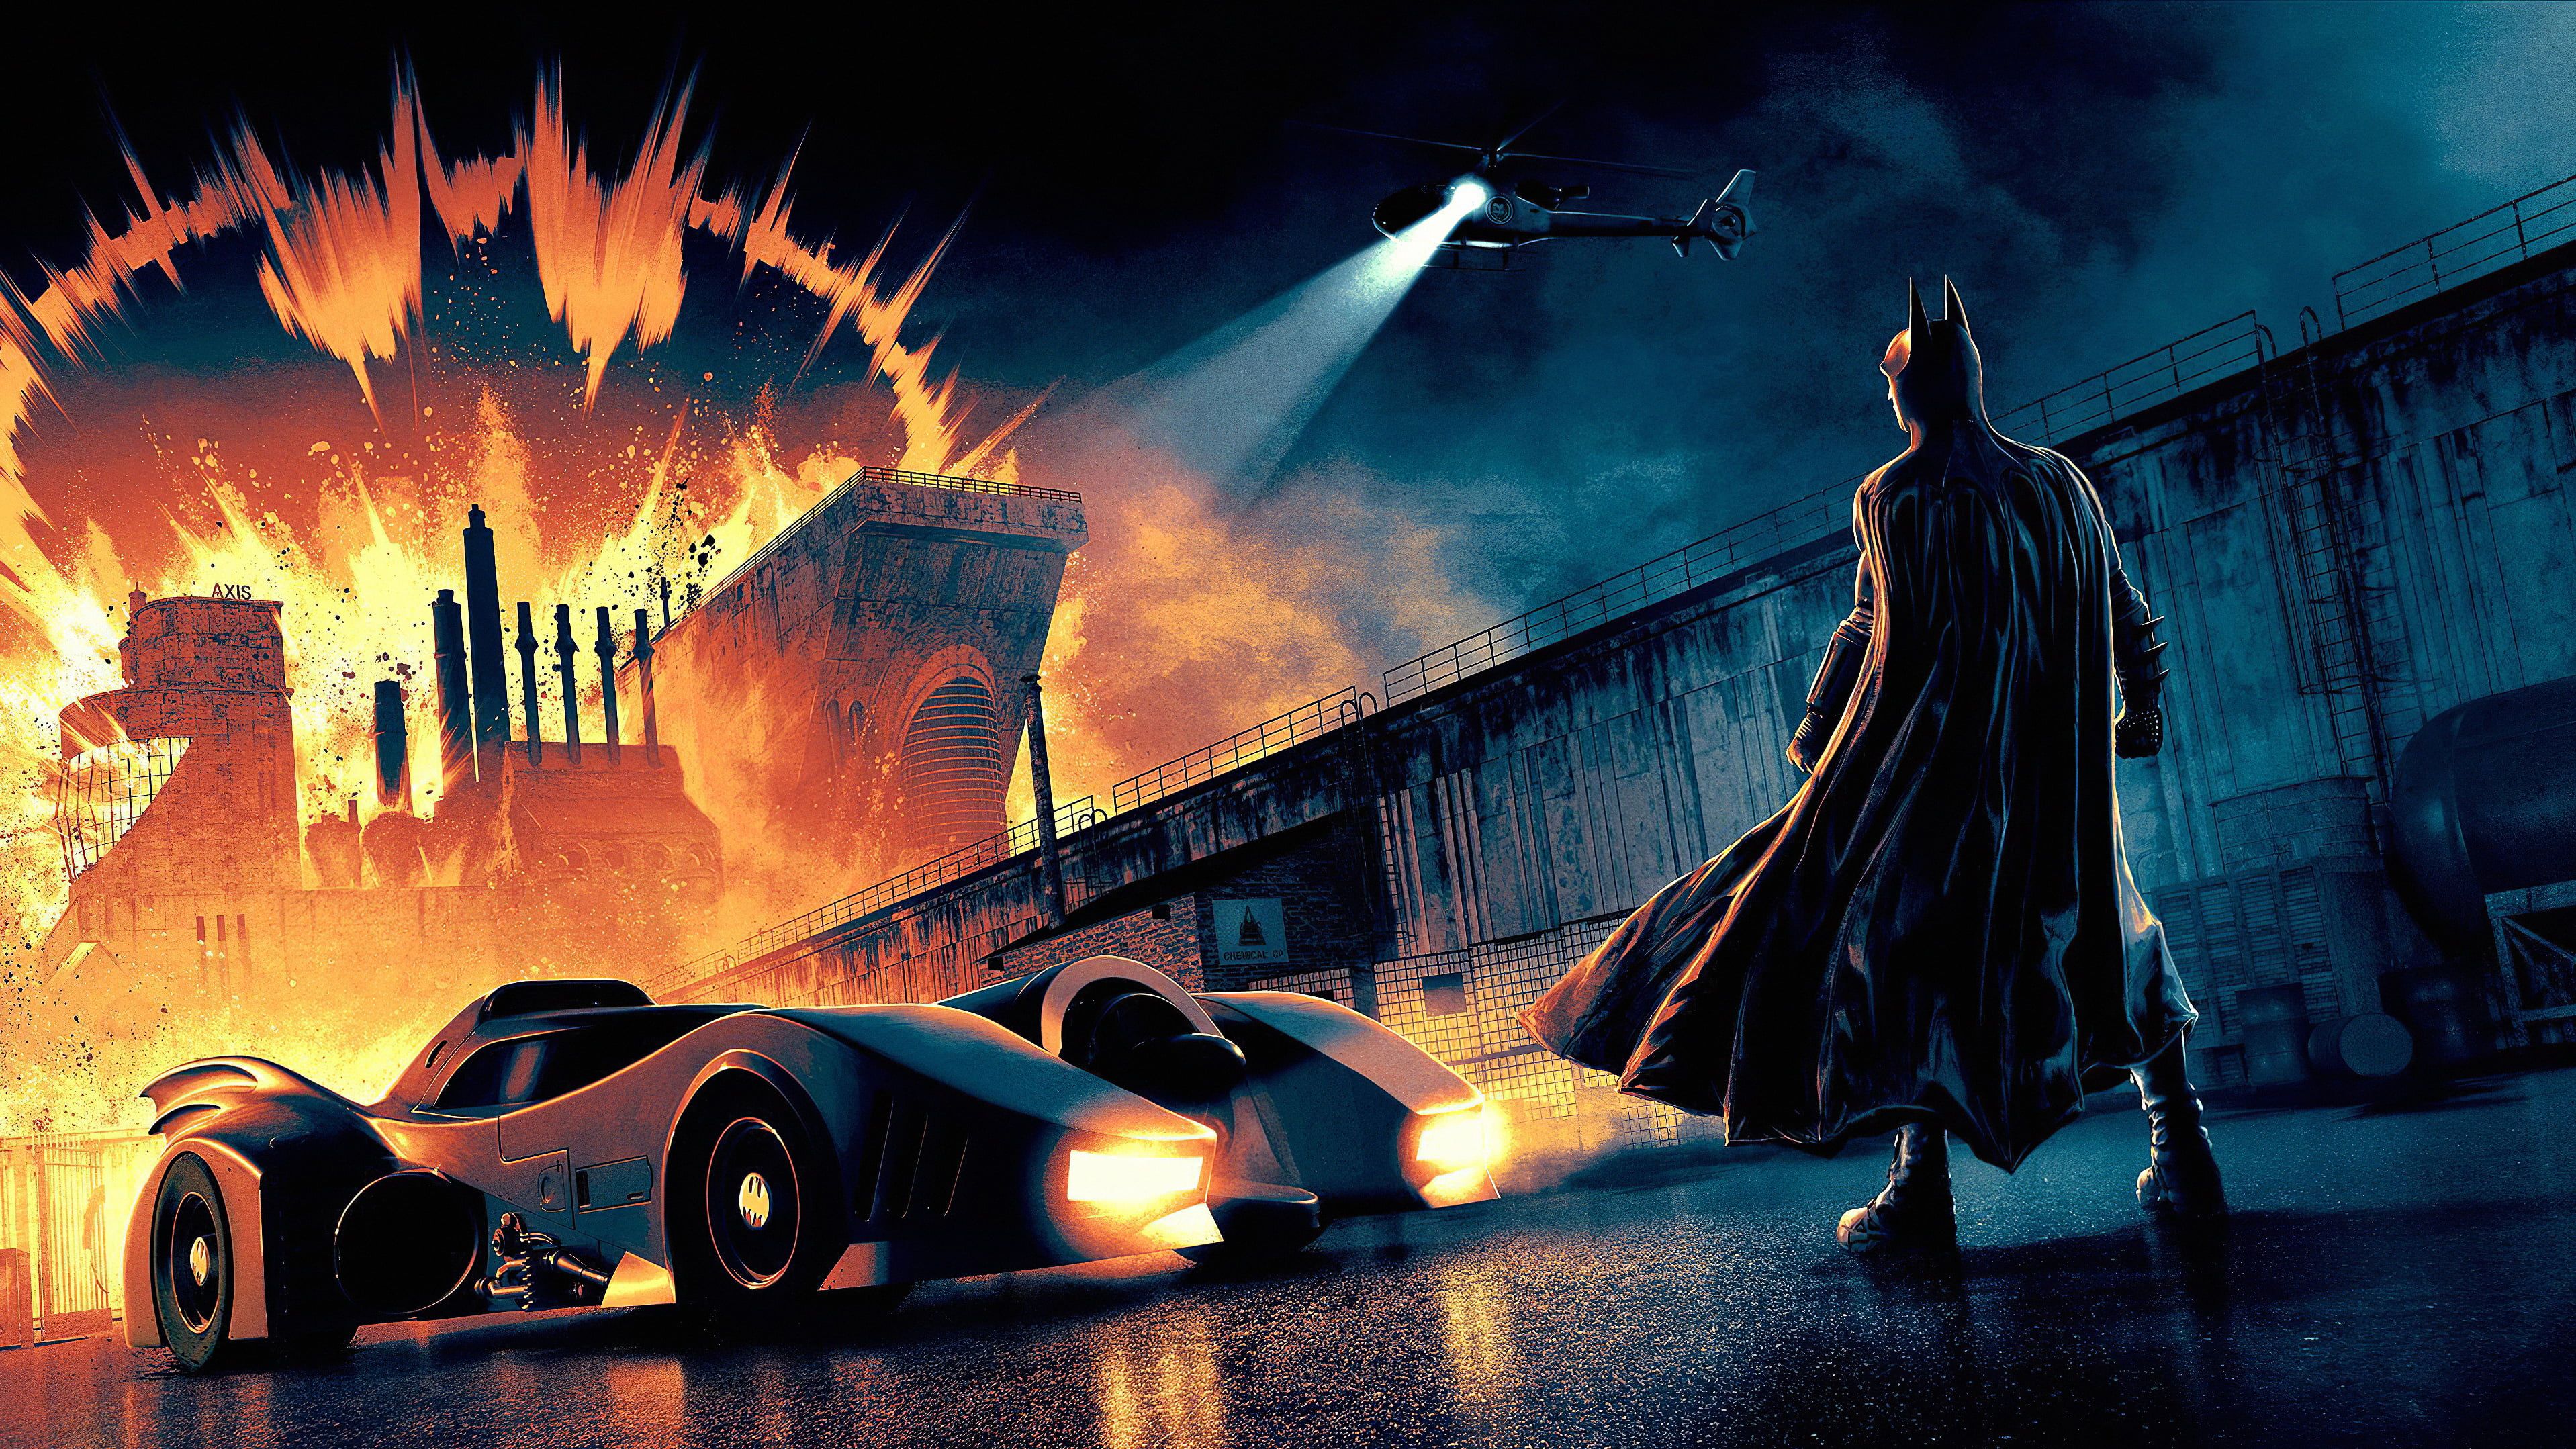 Batman #Batmobile DC Comics K #wallpaper #hdwallpaper #desktop. Dc comics wallpaper, Batmobile, Batman illustration